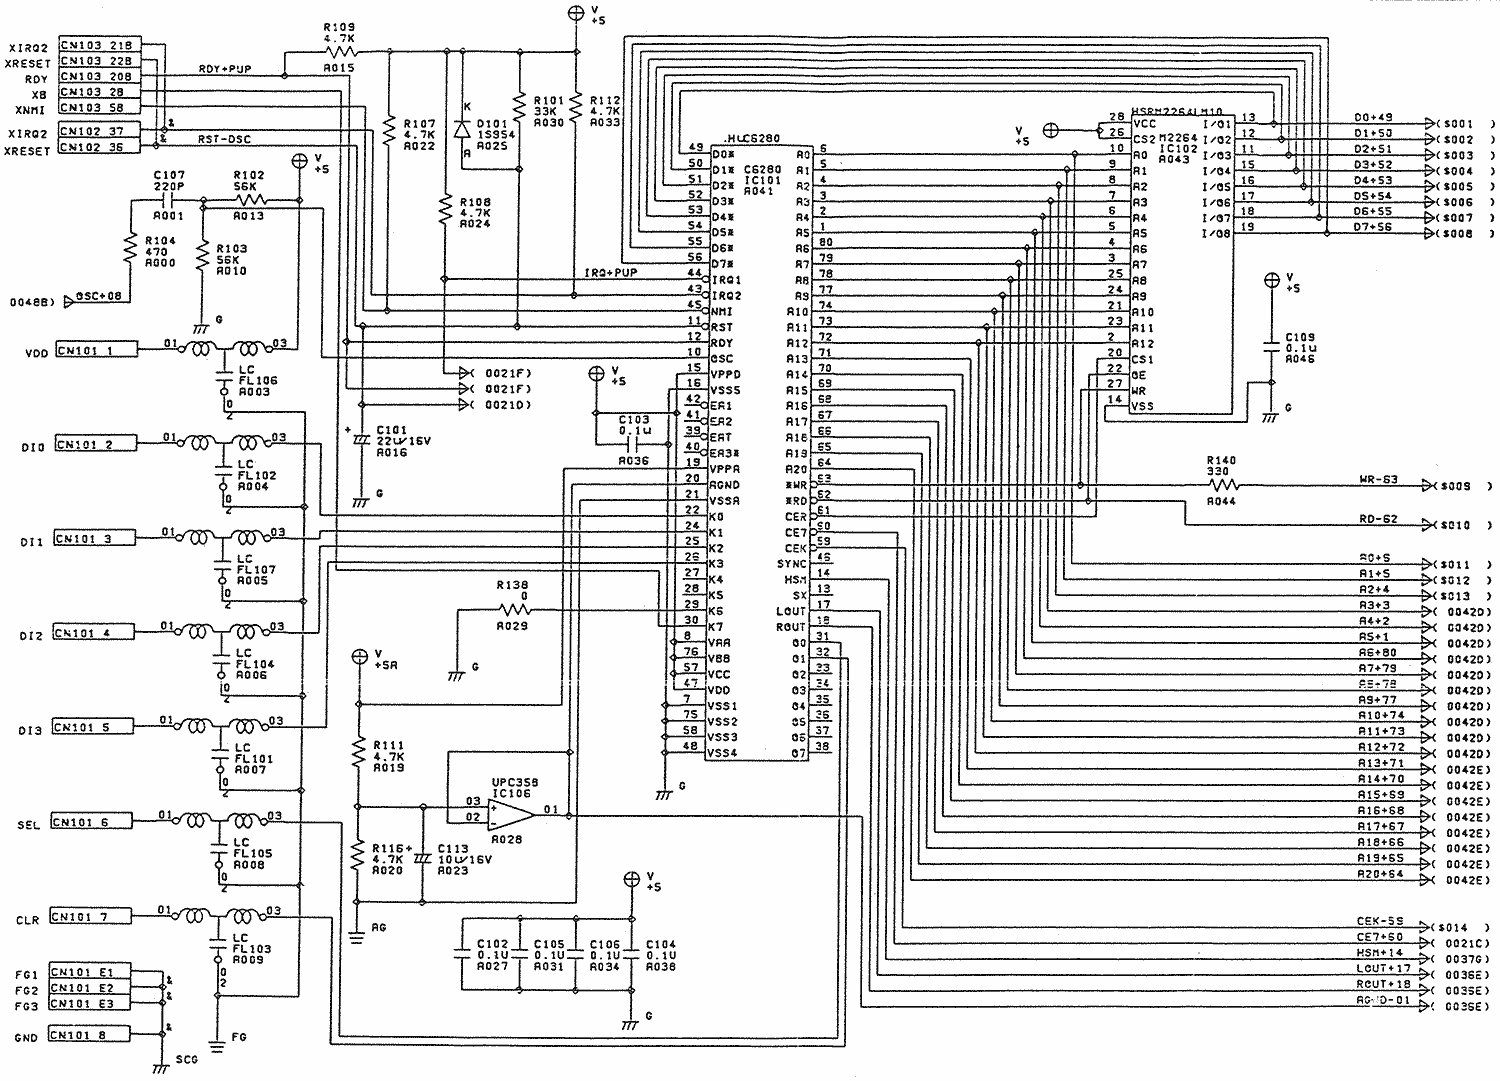 TurboGrafx-16 Schematic 1 - Hu6280 Circuit